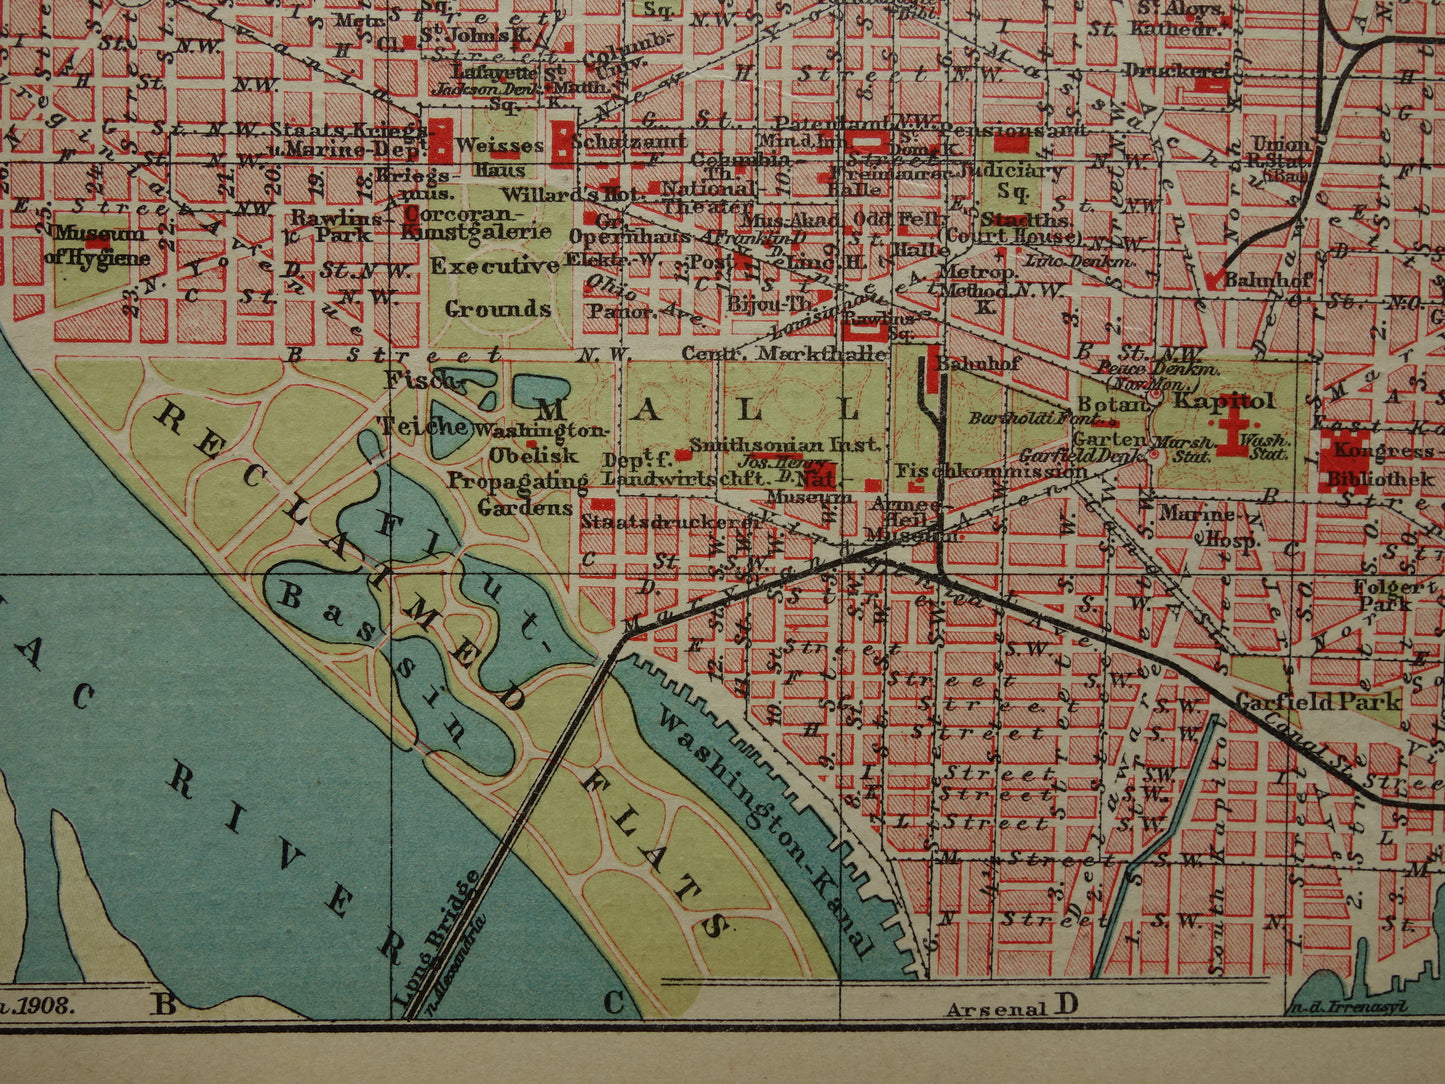 WASHINGTON oude plattegrond van Washington DC antieke kleine kaart VS vintage kaarten met jaartal